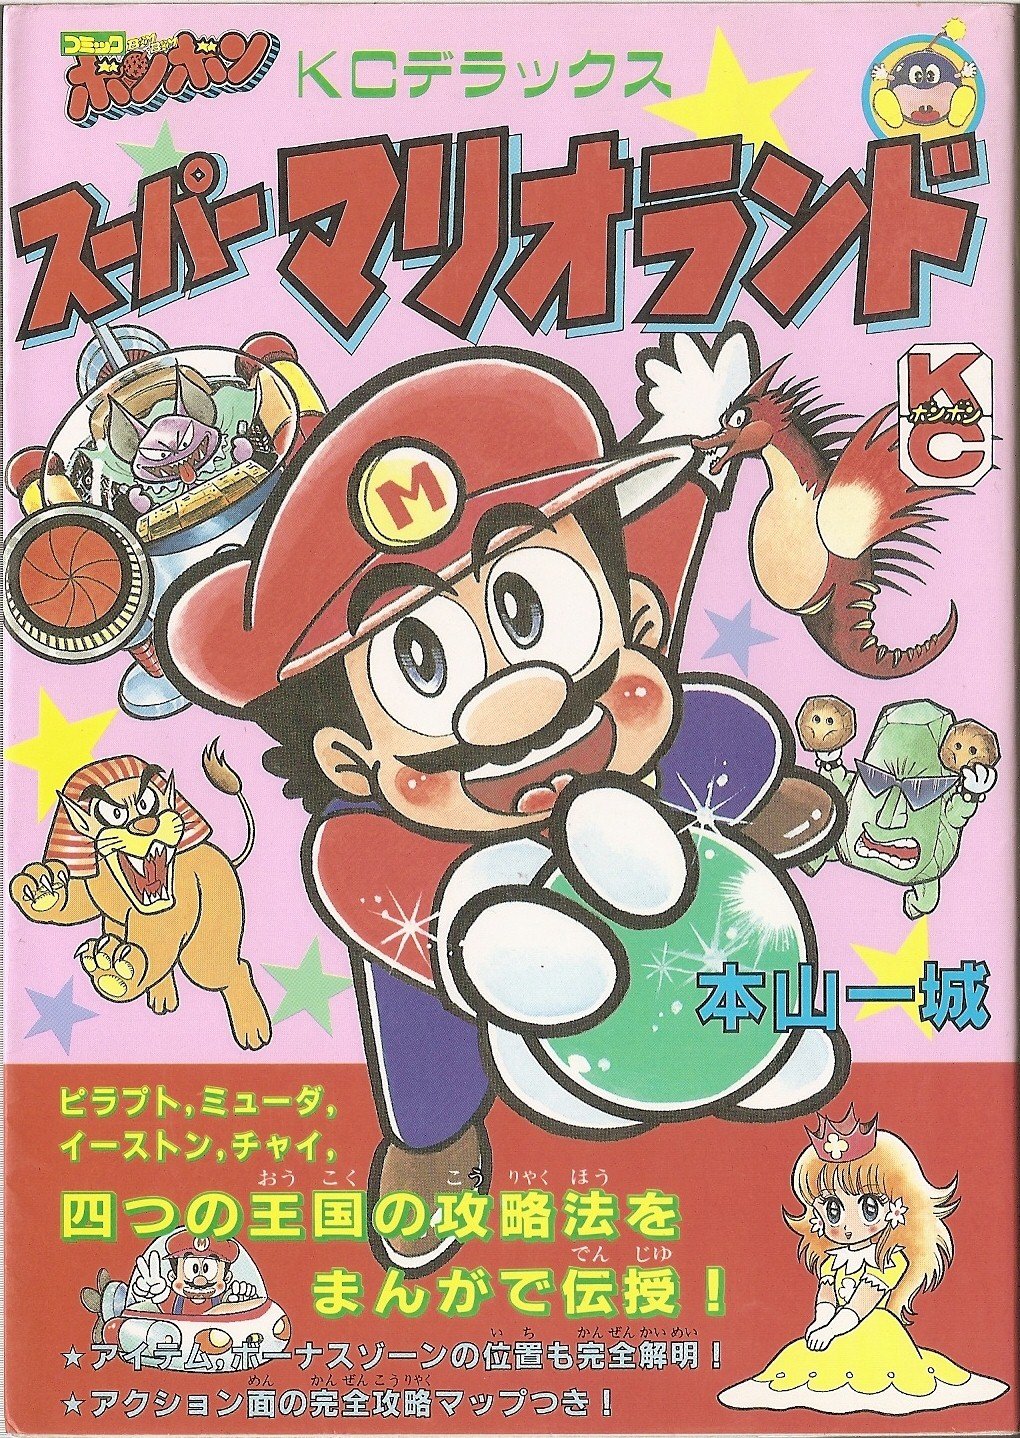 Sarasaland - Super Mario Wiki, the Mario encyclopedia